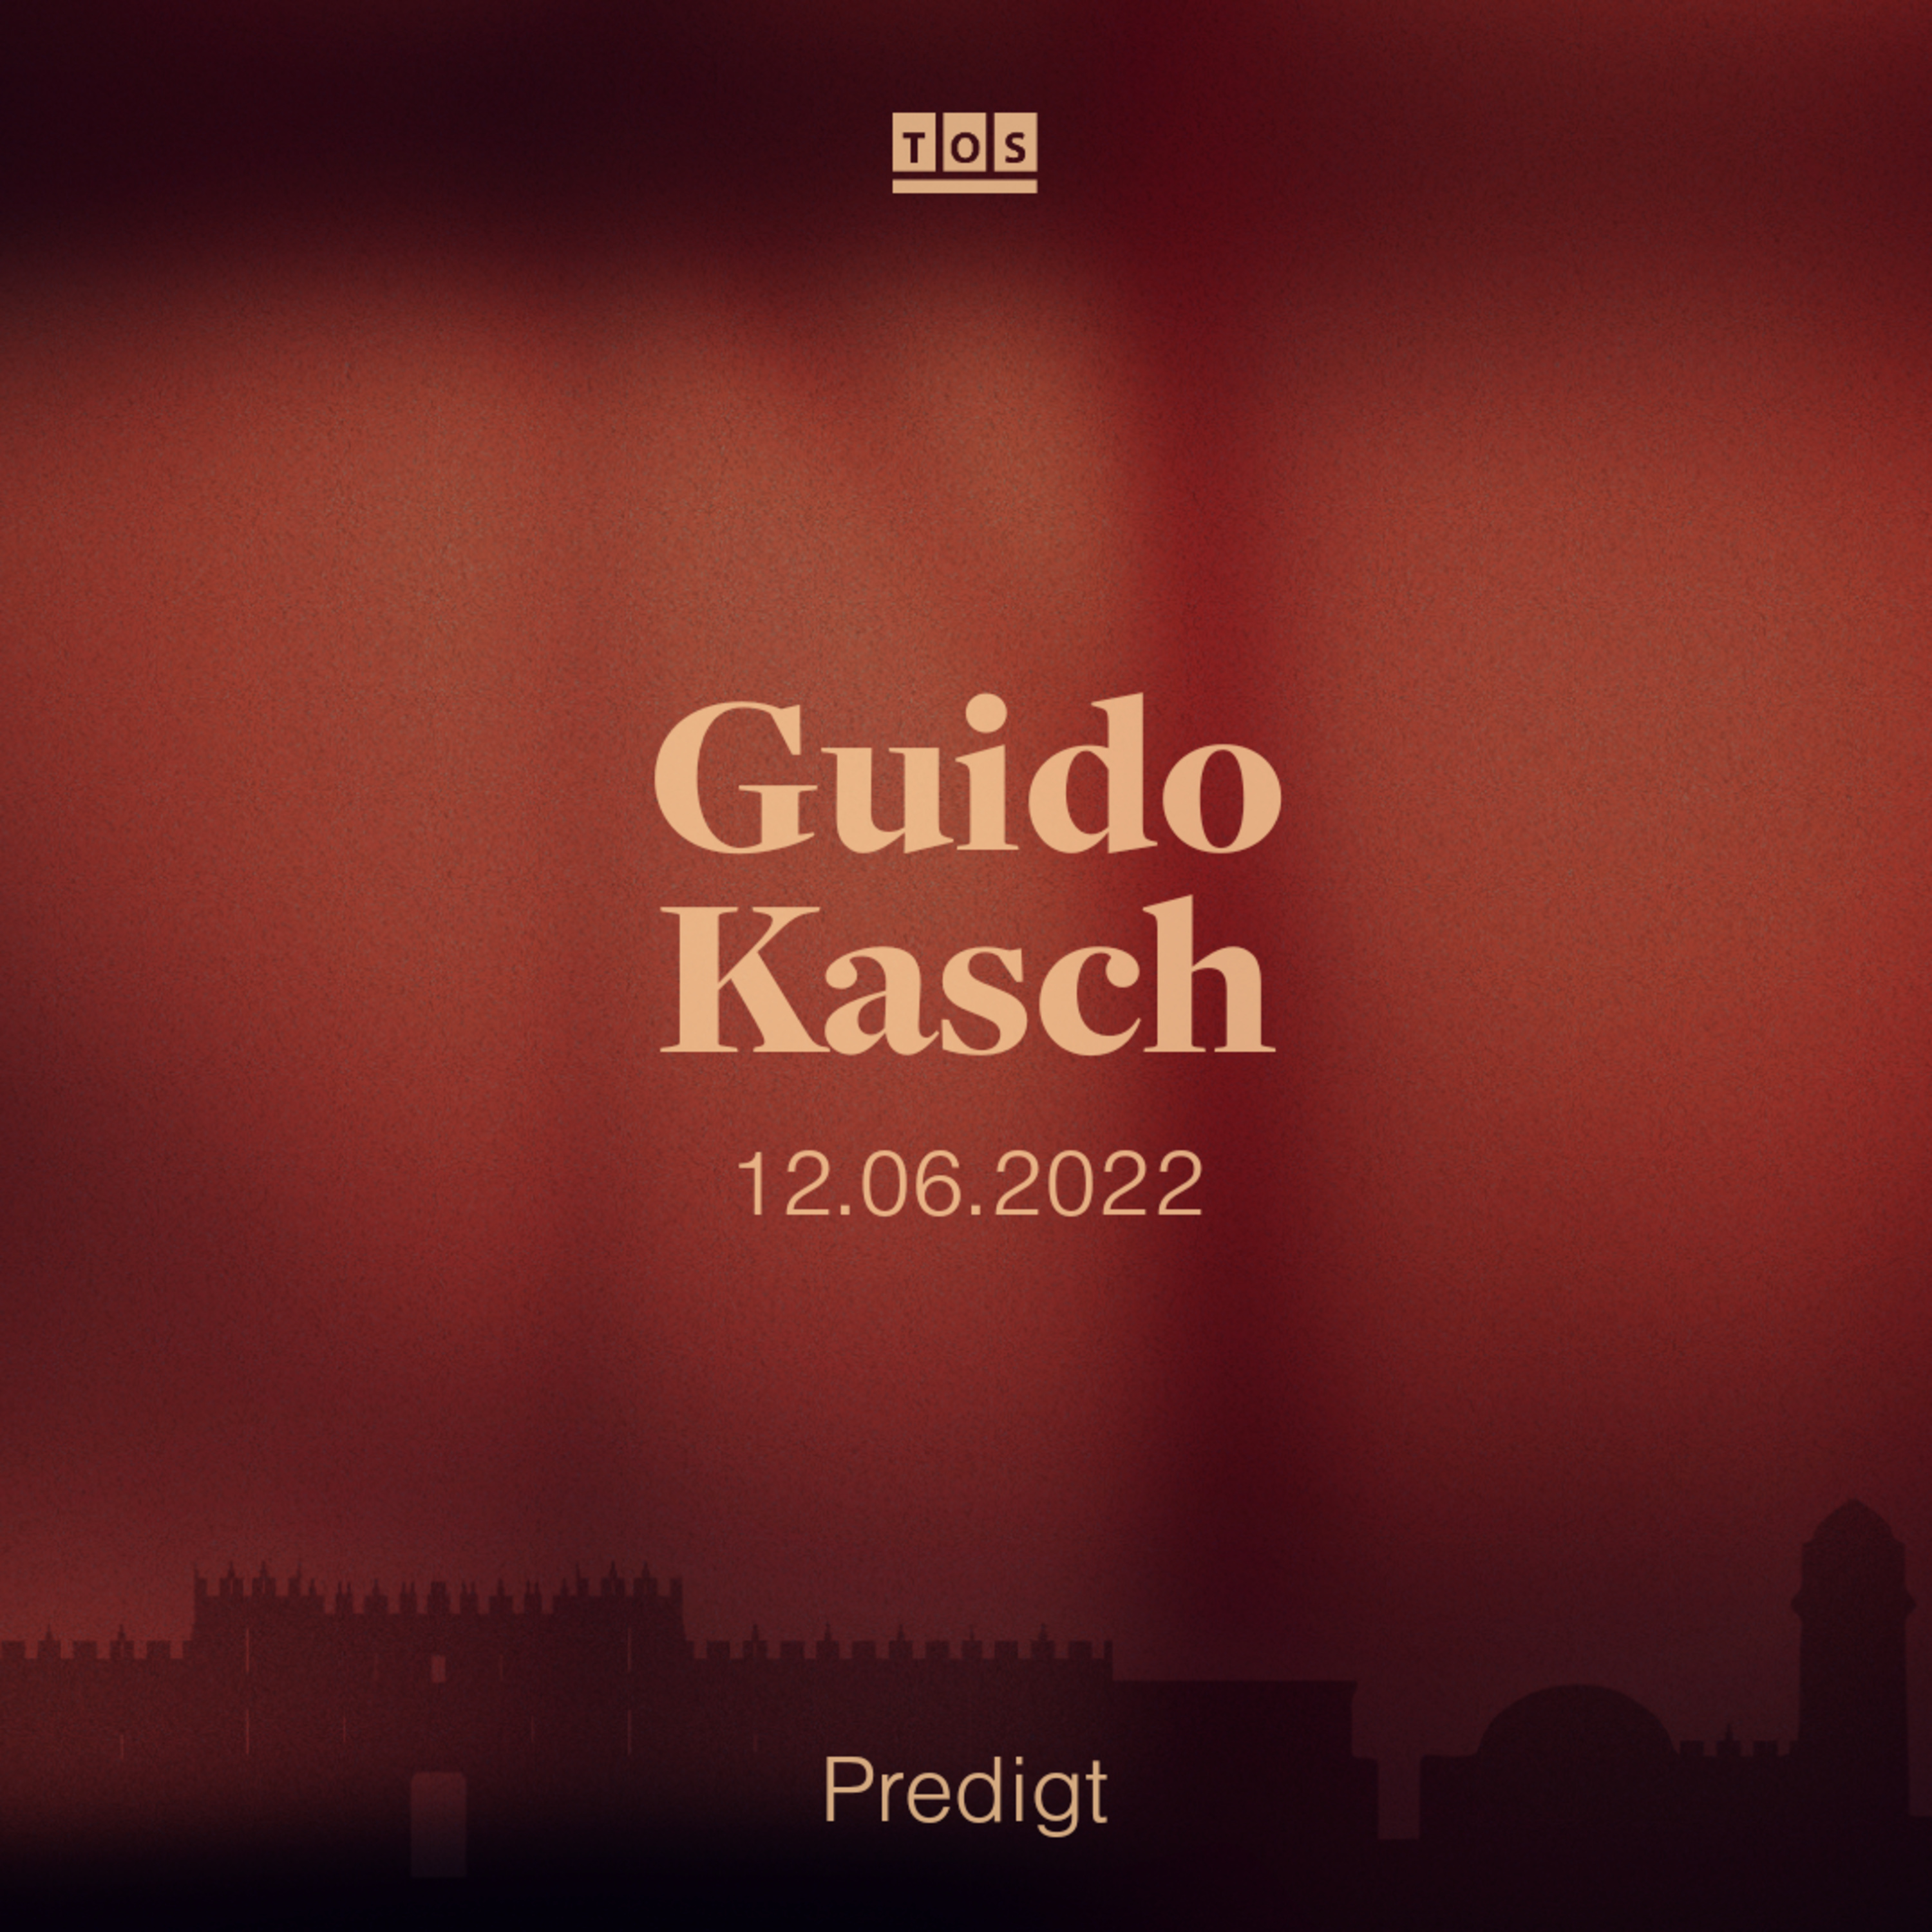 Guido Kasch - 12.06.2022 hero artwork